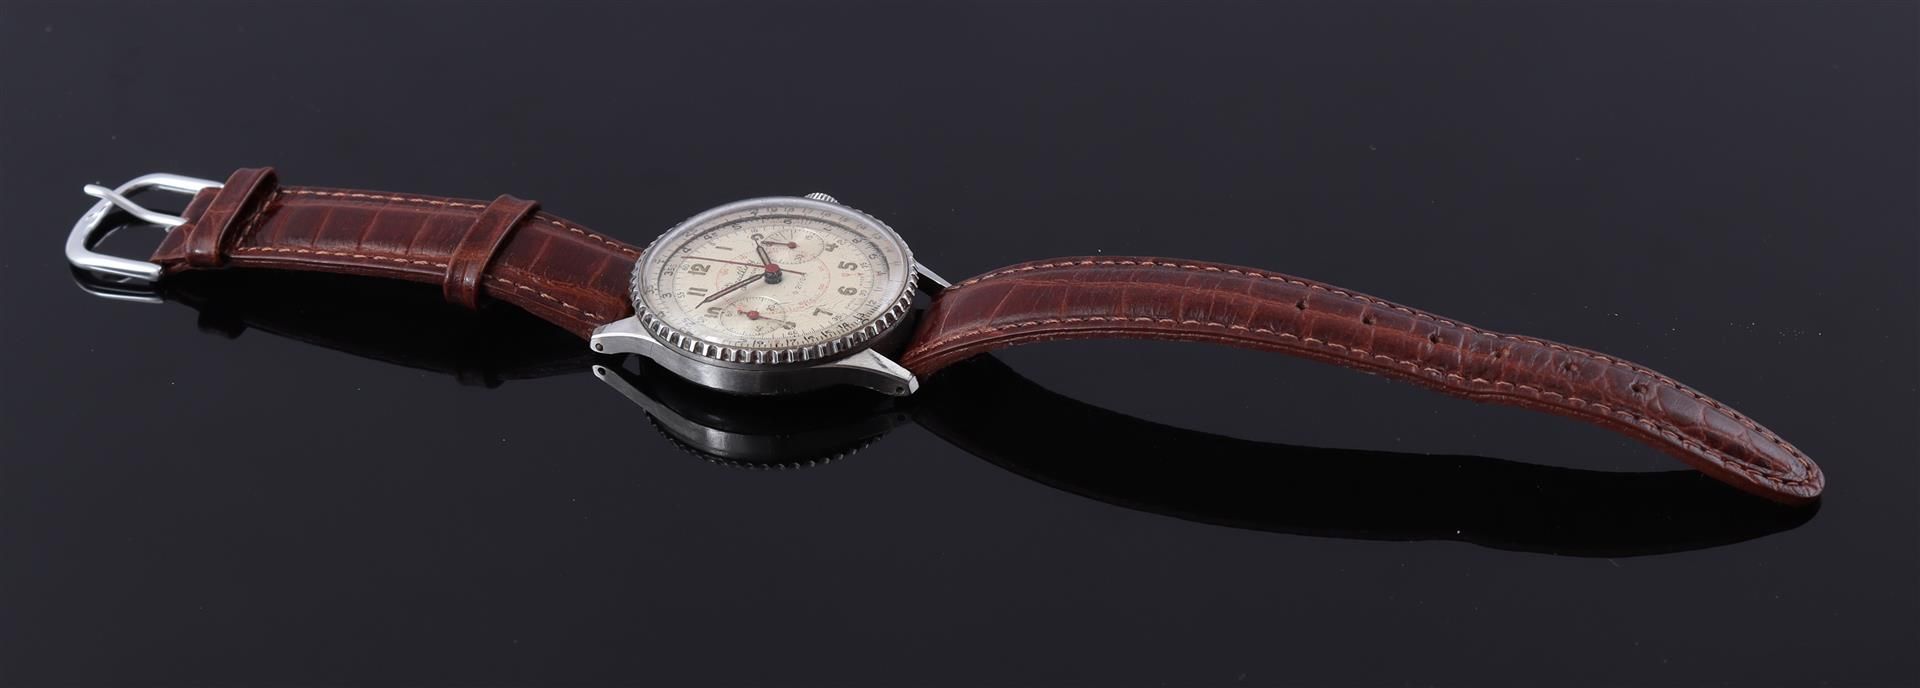 Breitling Swiss wristwatch - Image 2 of 2